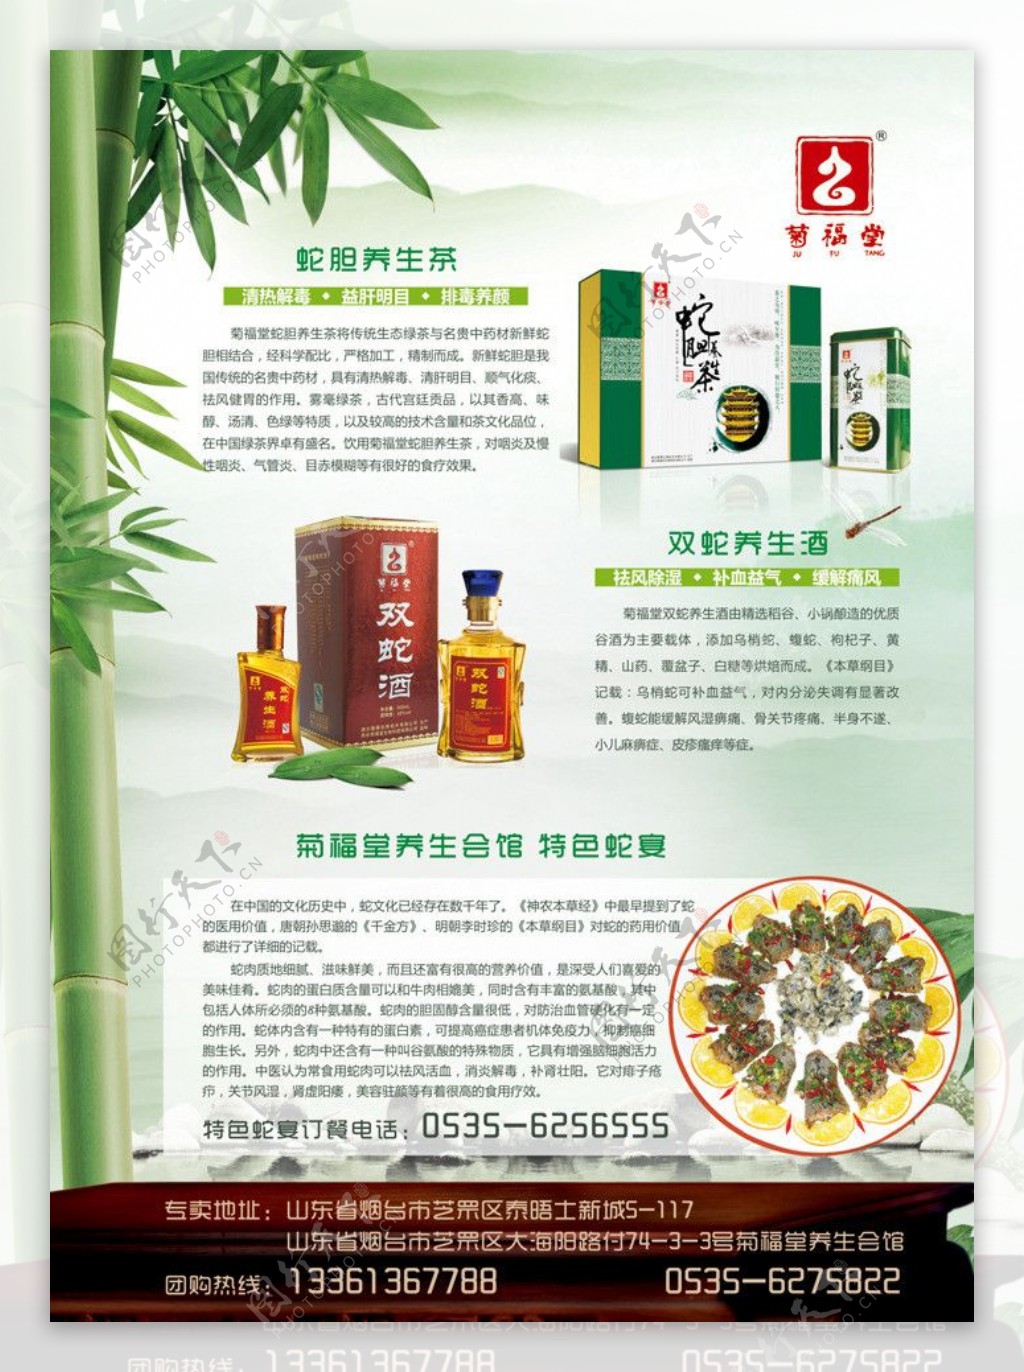 菊福堂中国风酒广告图片